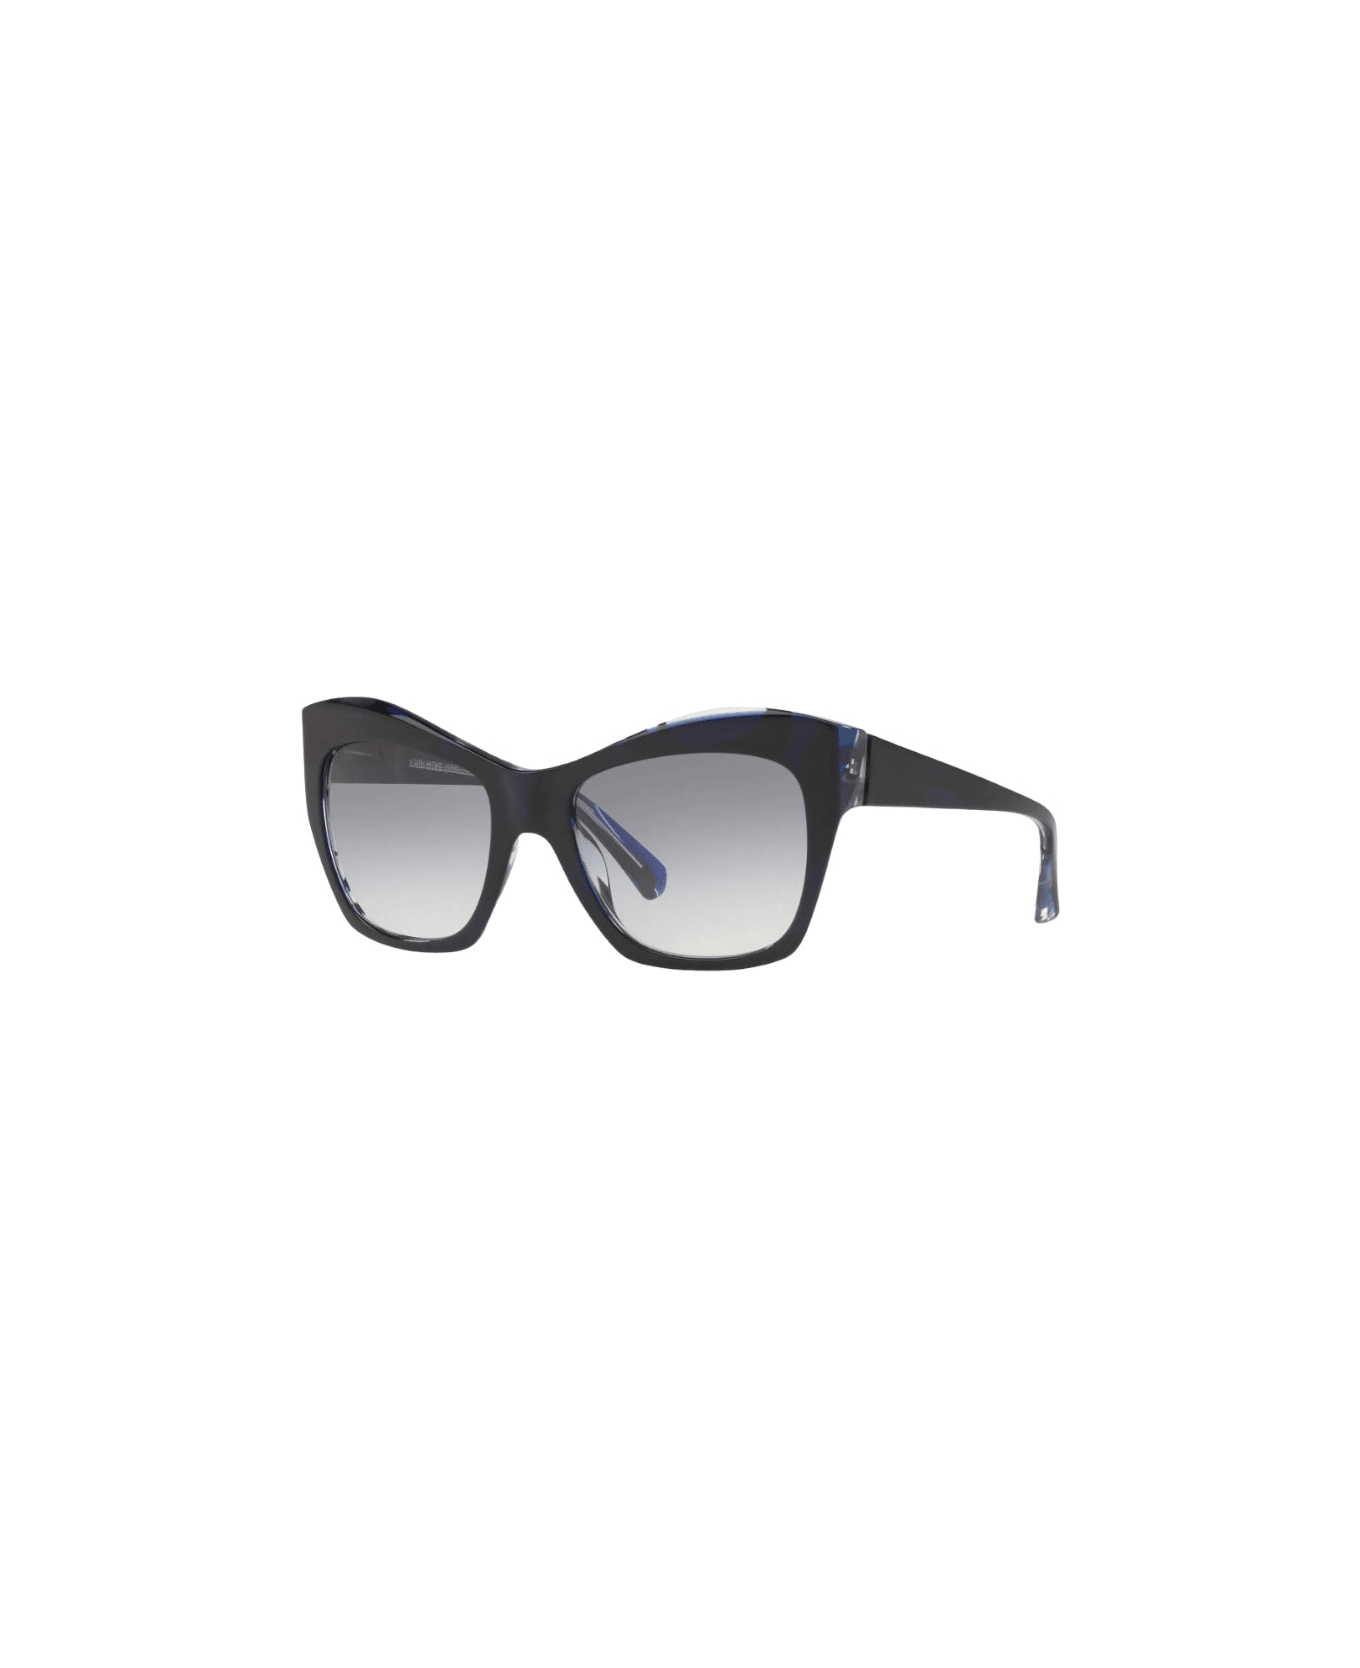 Alain Mikli Nuages - 5043 - Black / Blu Sunglasses